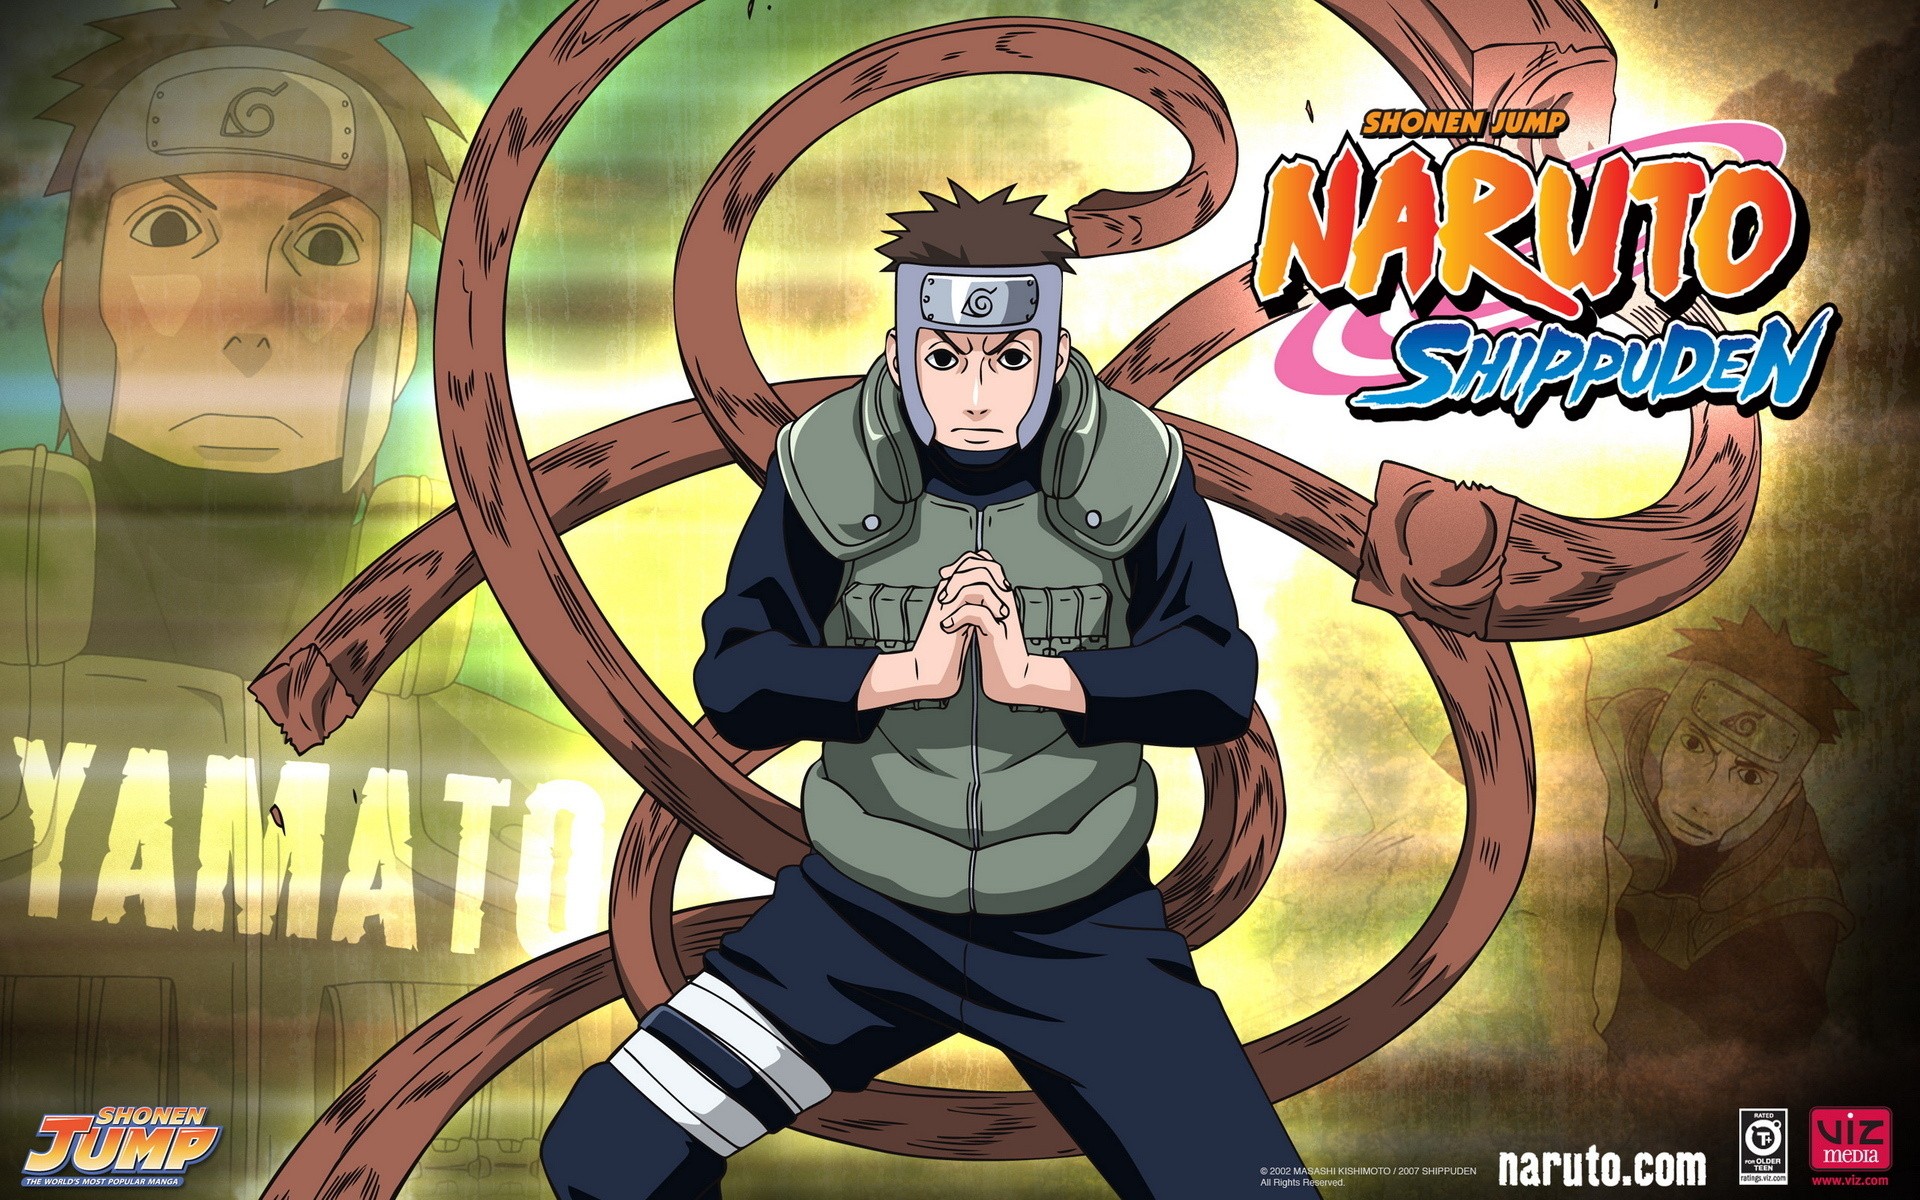 Naruto: Shippuden, anime, Yamato - desktop wallpaper